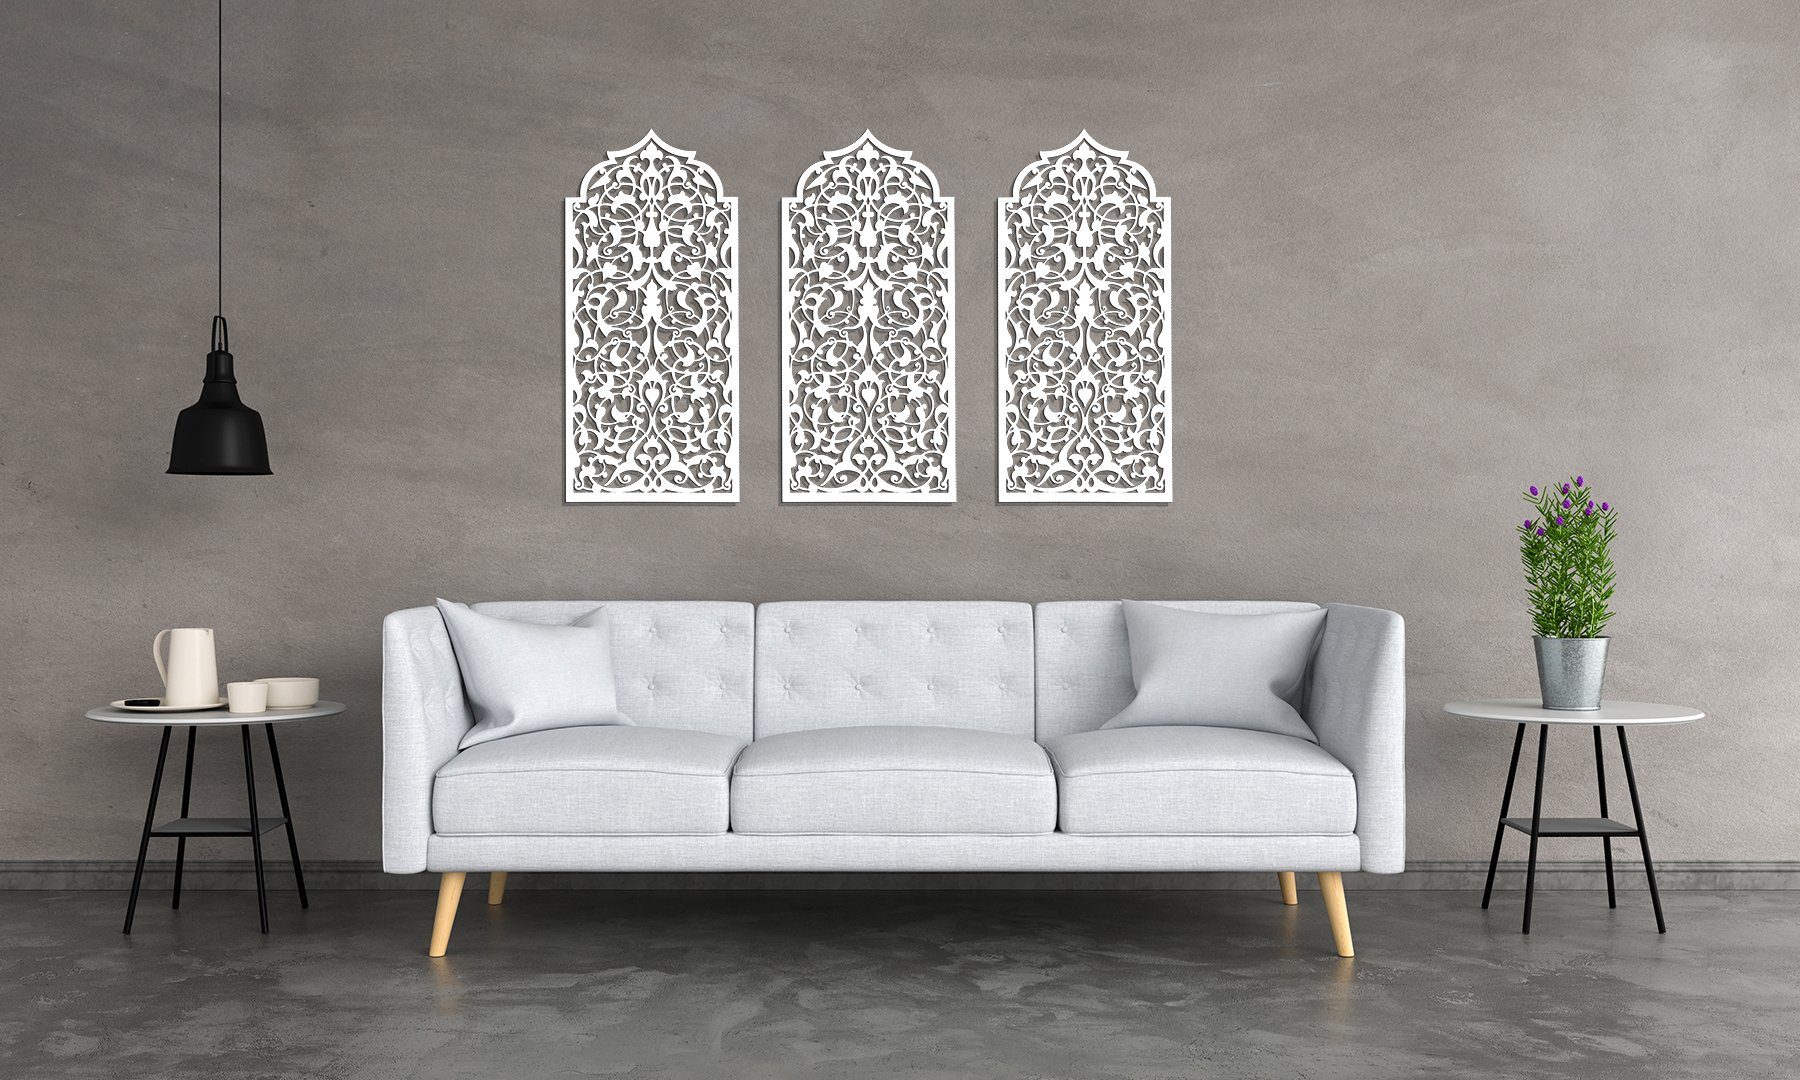 ORNAMENTI Mehrteilige Bilder 3D grosse Marokkanisches Fenster, Wanddeko, Handwerk Holzbild